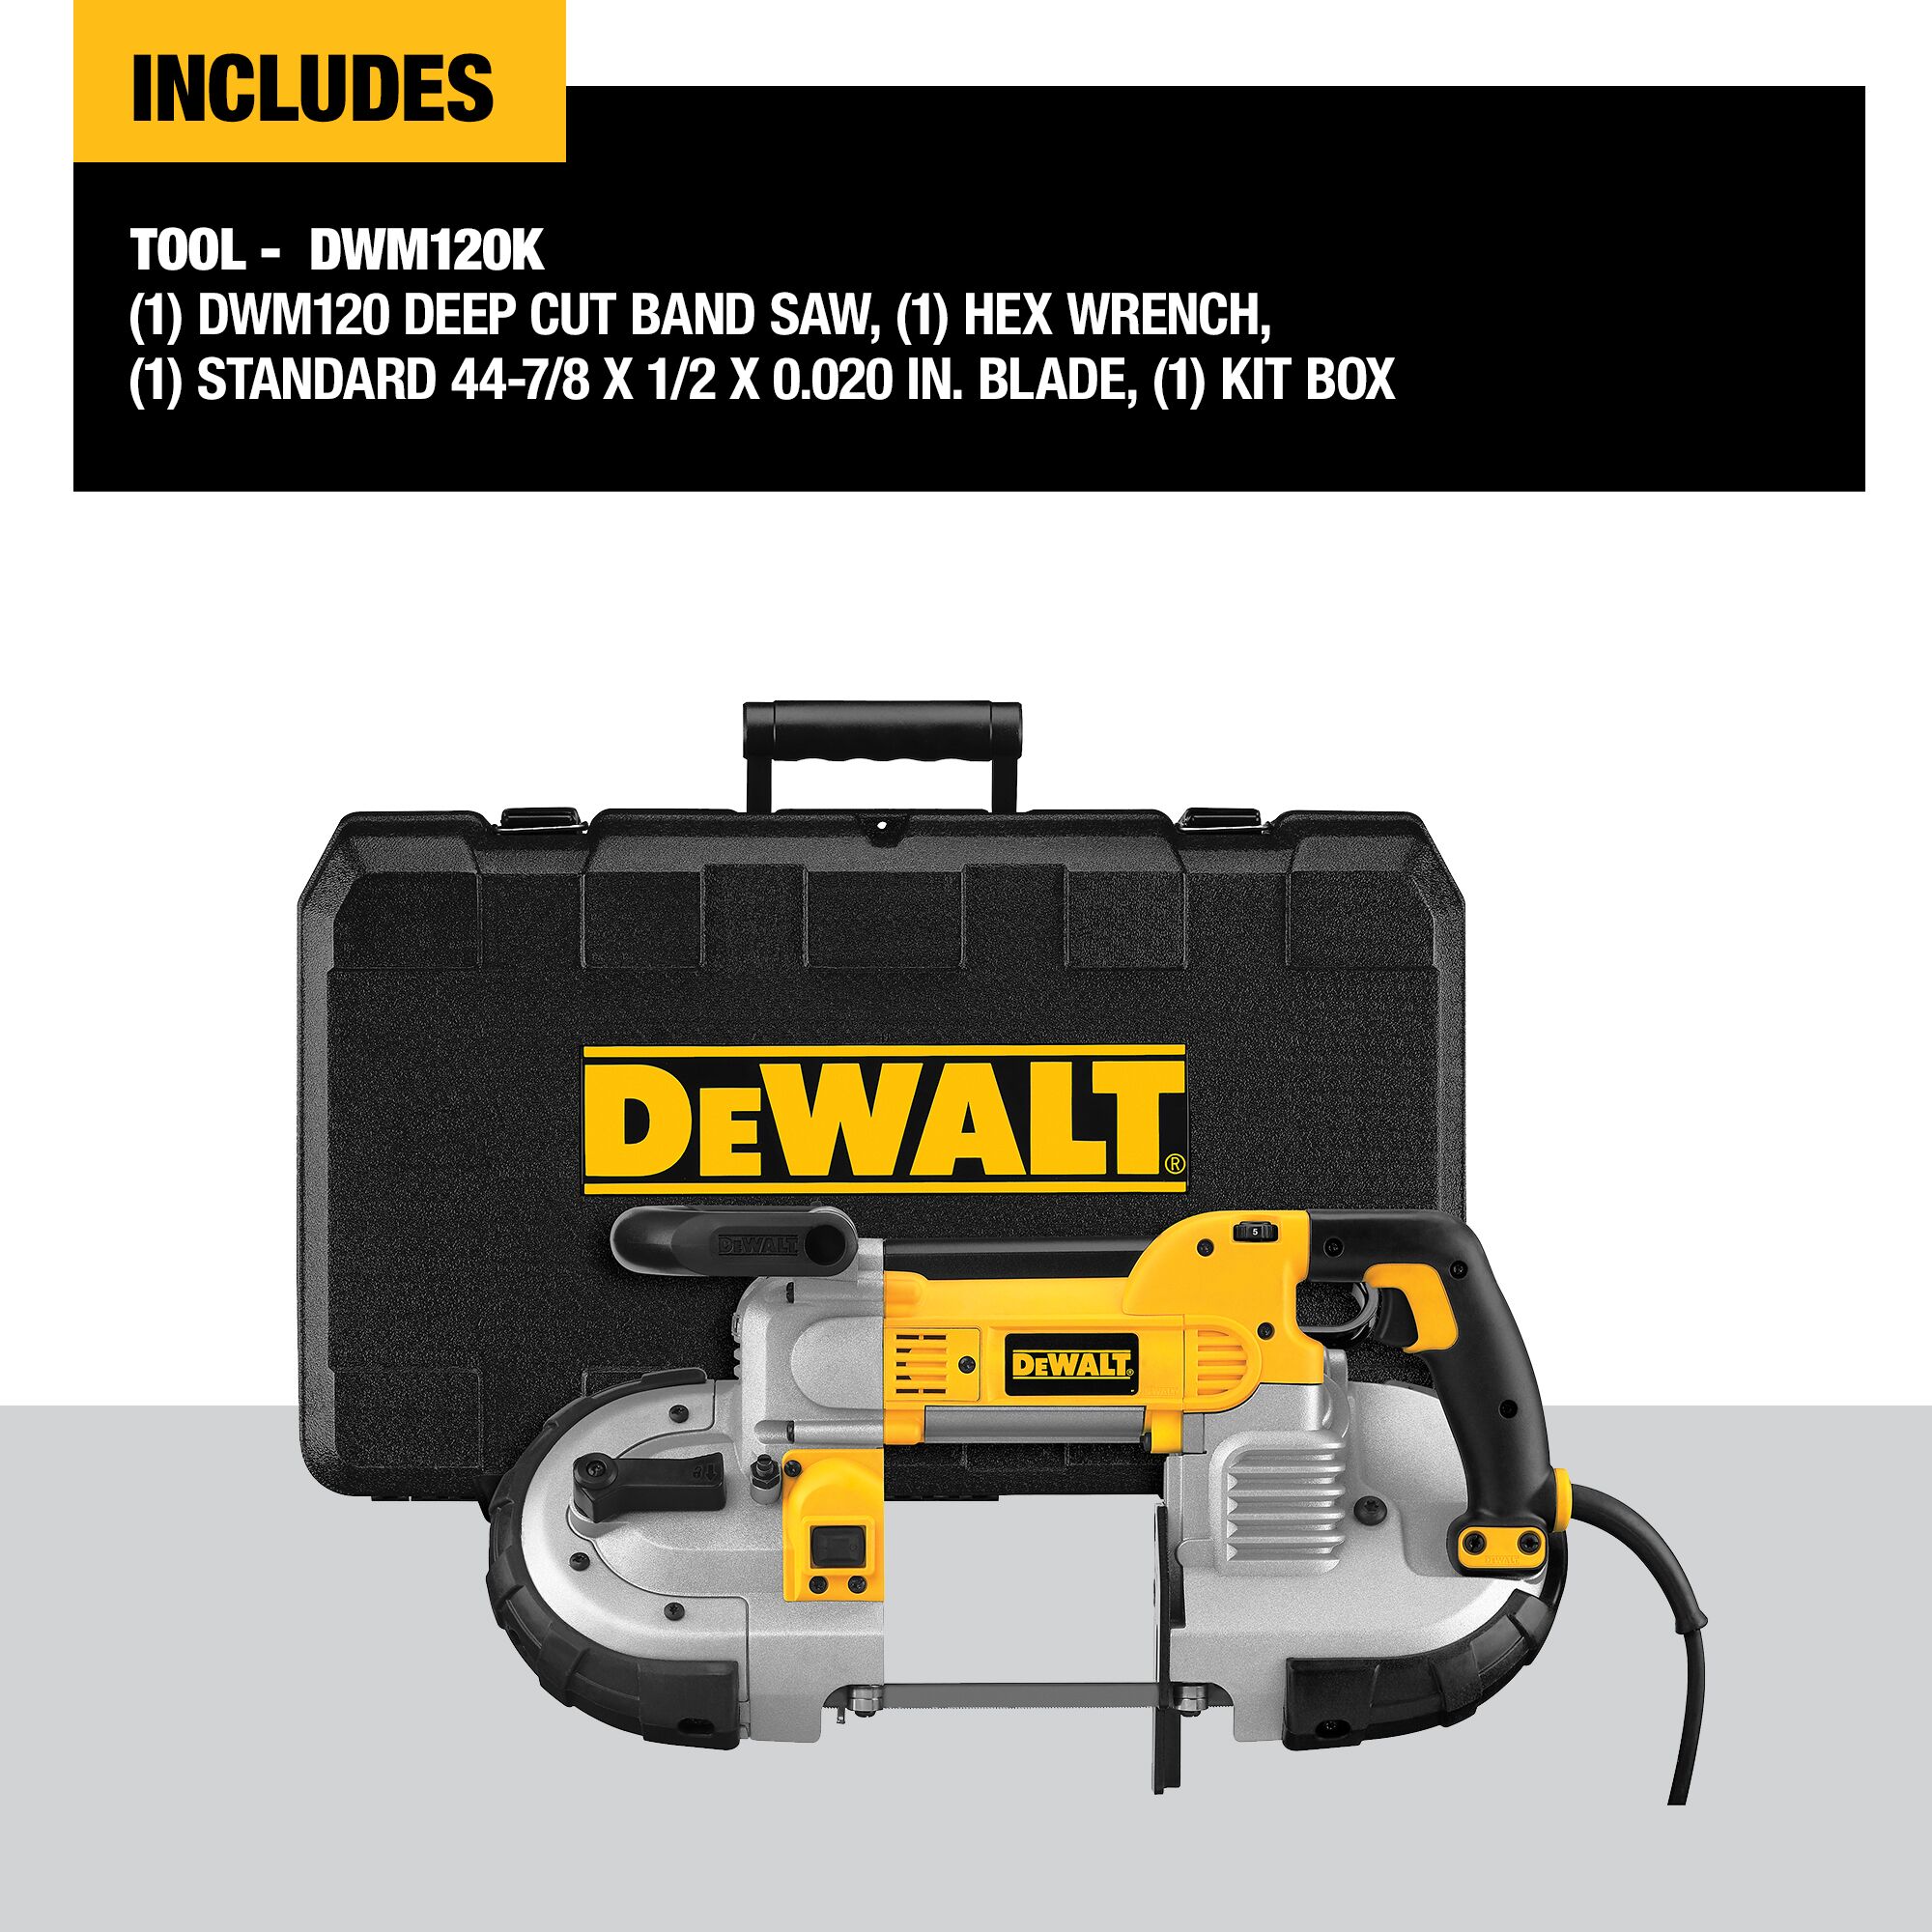 DeWalt Tools Decal Sticker Bumper Tool Box Saw Drill 8 x 2.50